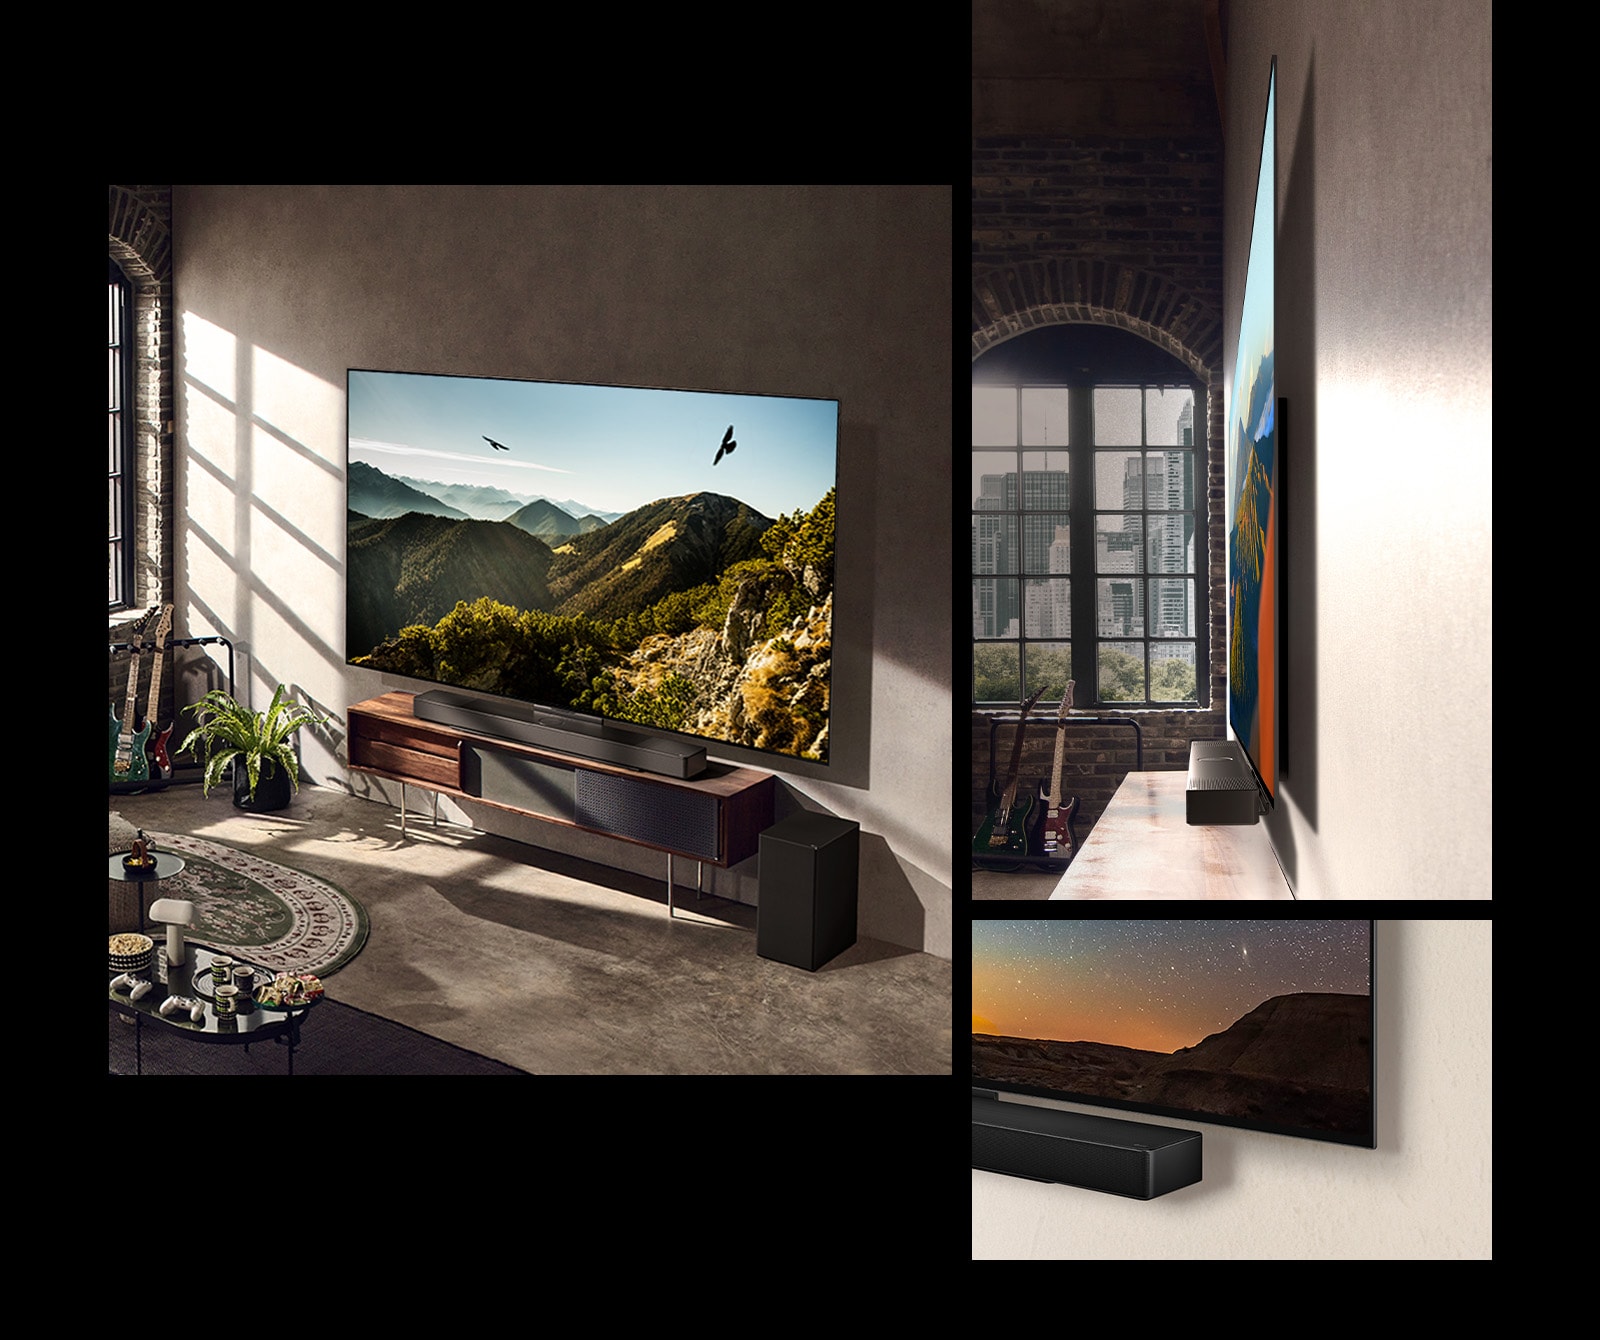 Zdjęcie telewizora LG OLED C3 z soundbarem na ścianie w artystycznie urządzonym pokoju. Widok z boku ukazujący, jak cienki jest telewizor LG OLED C3, który znajduje się naprzeciwko okna wychodzącego na miasto. Dolny róg telewizora LG OLED C3 i soundbaru.